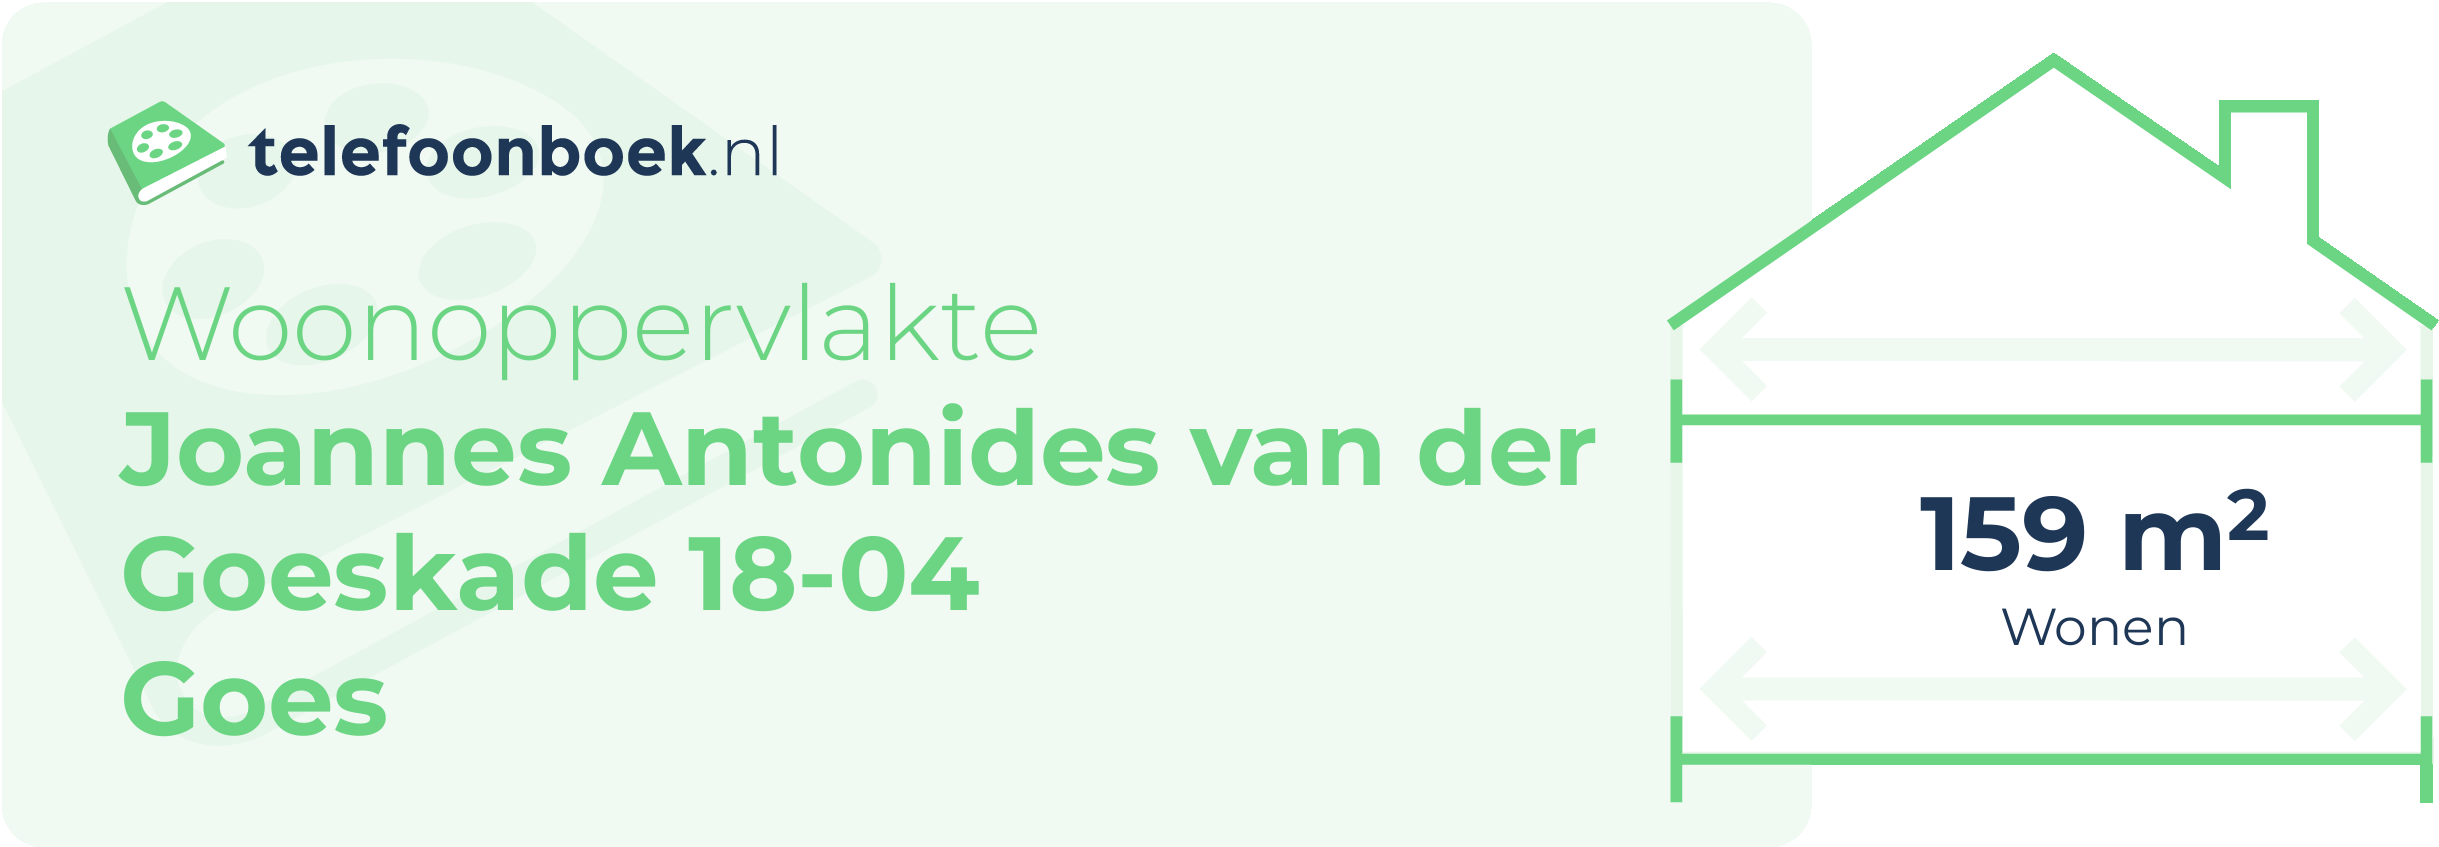 Woonoppervlakte Joannes Antonides Van Der Goeskade 18-04 Goes